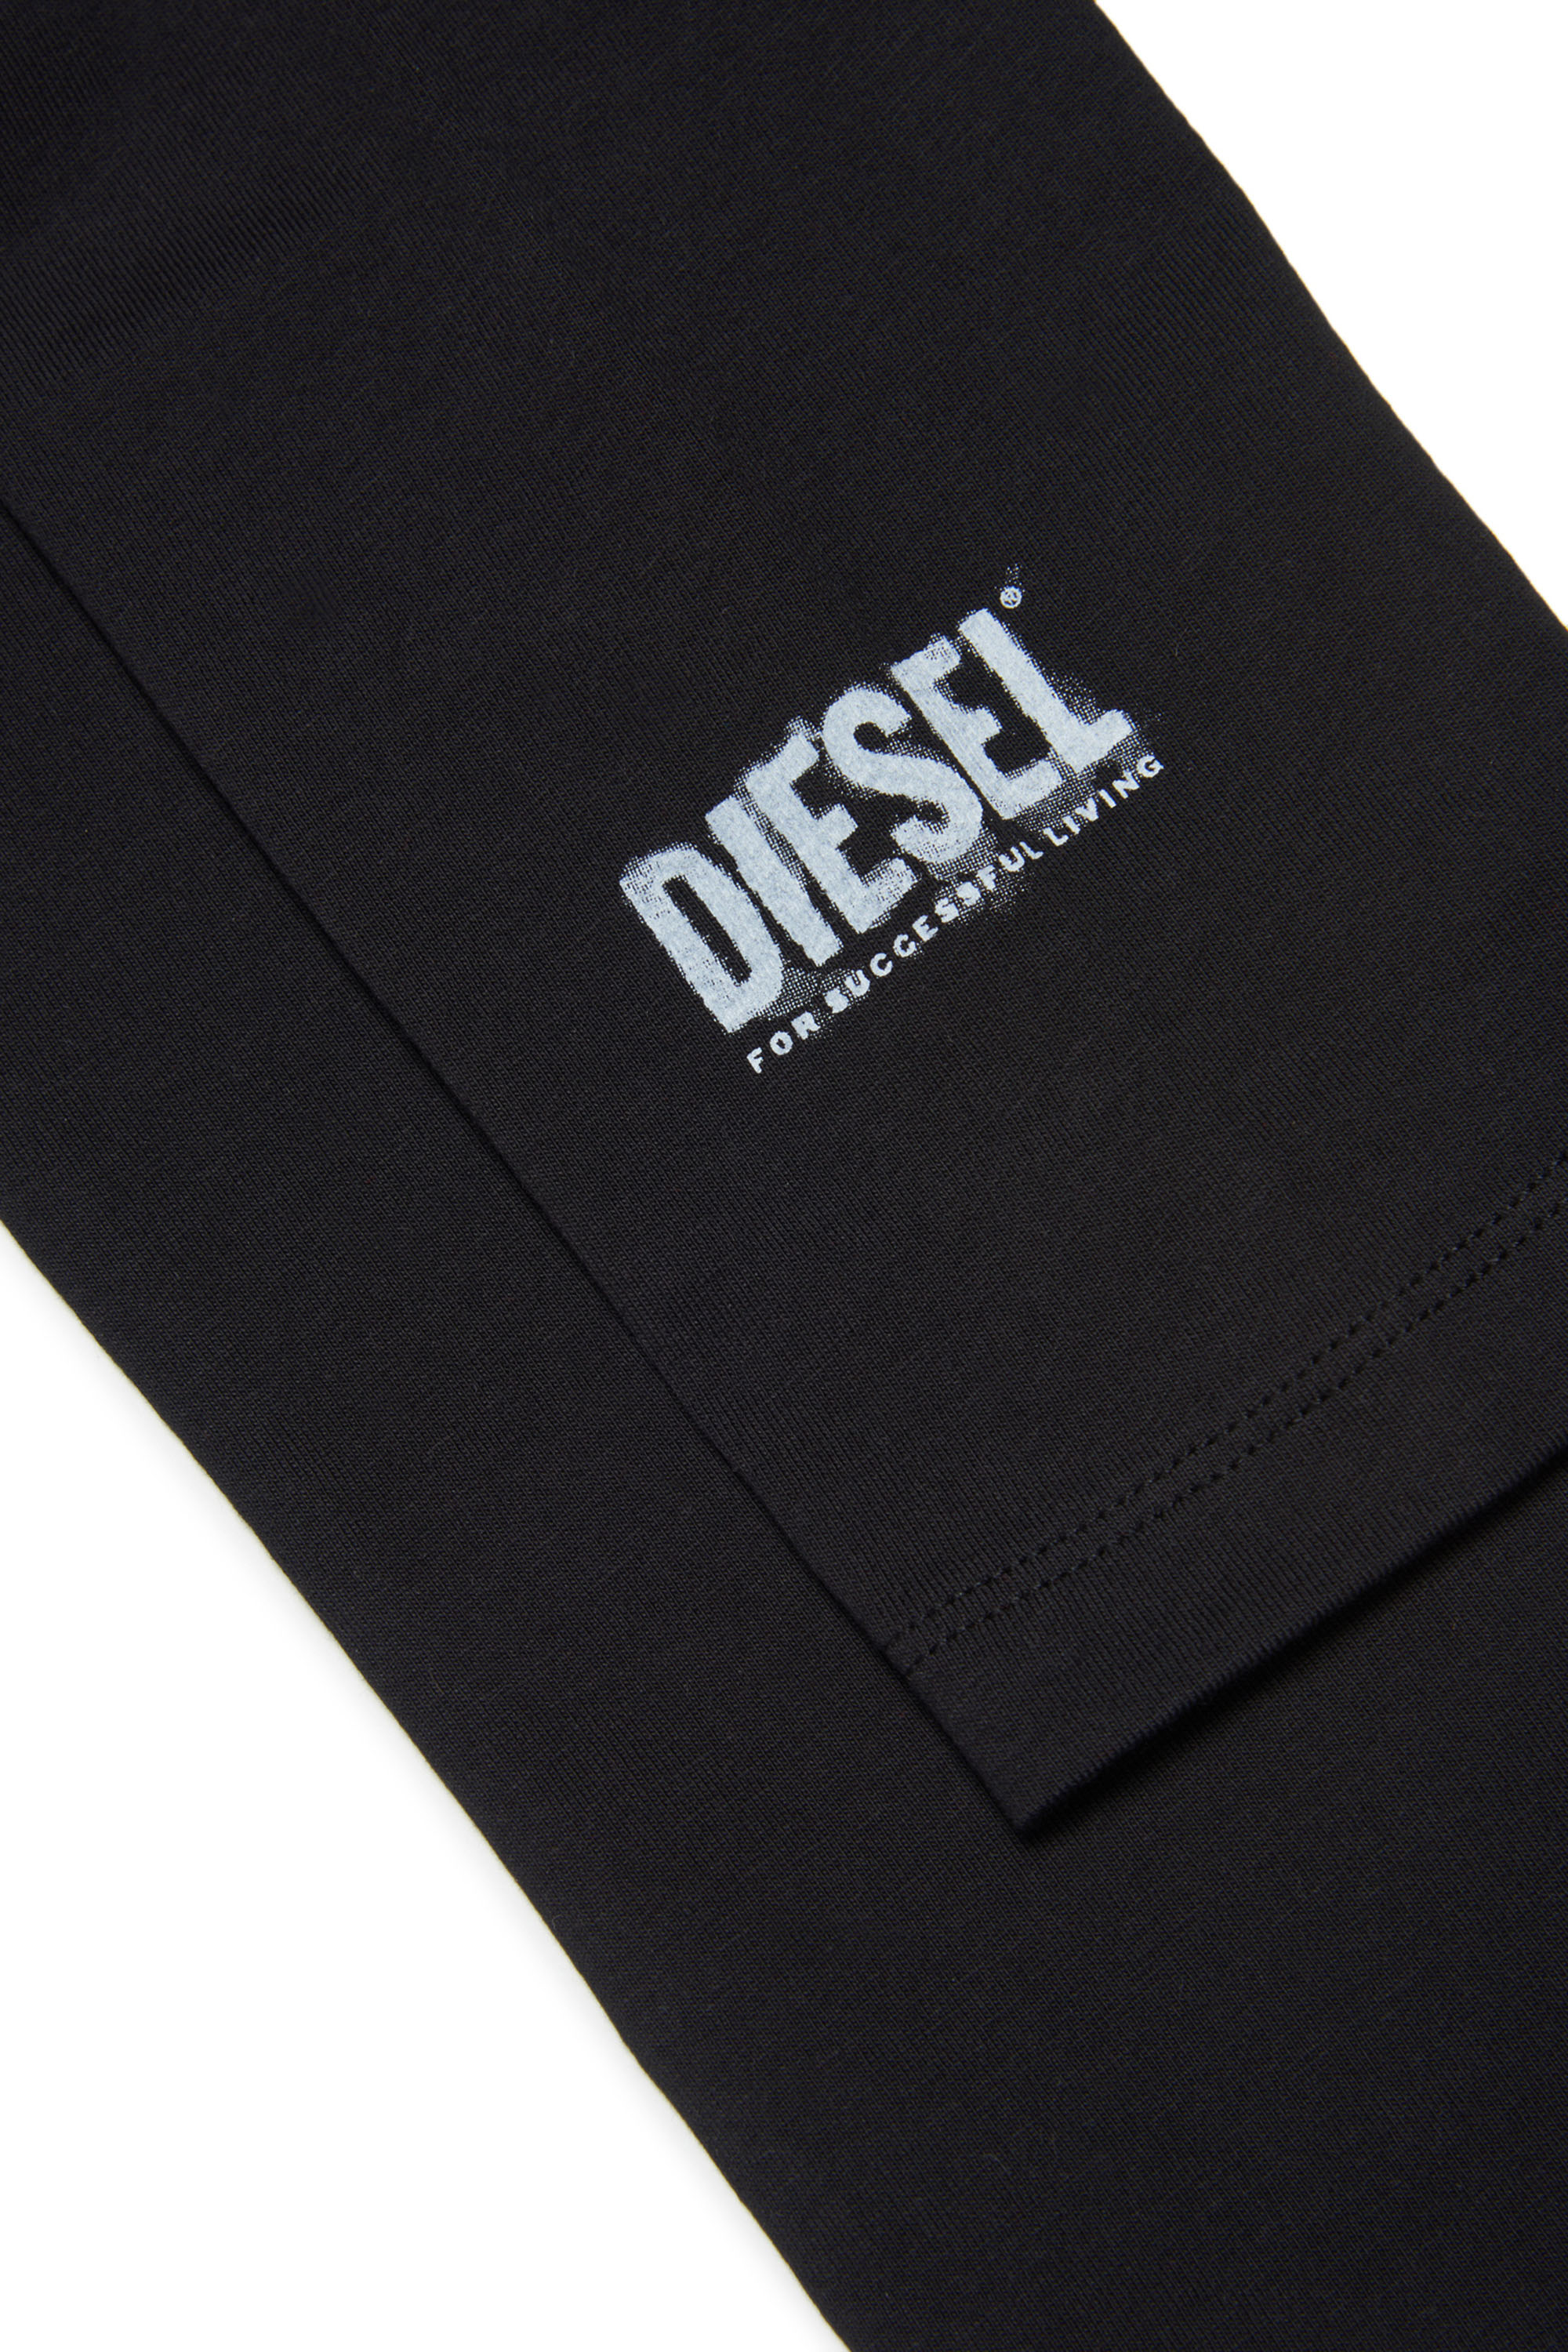 Diesel - PARITY, Black - Image 3